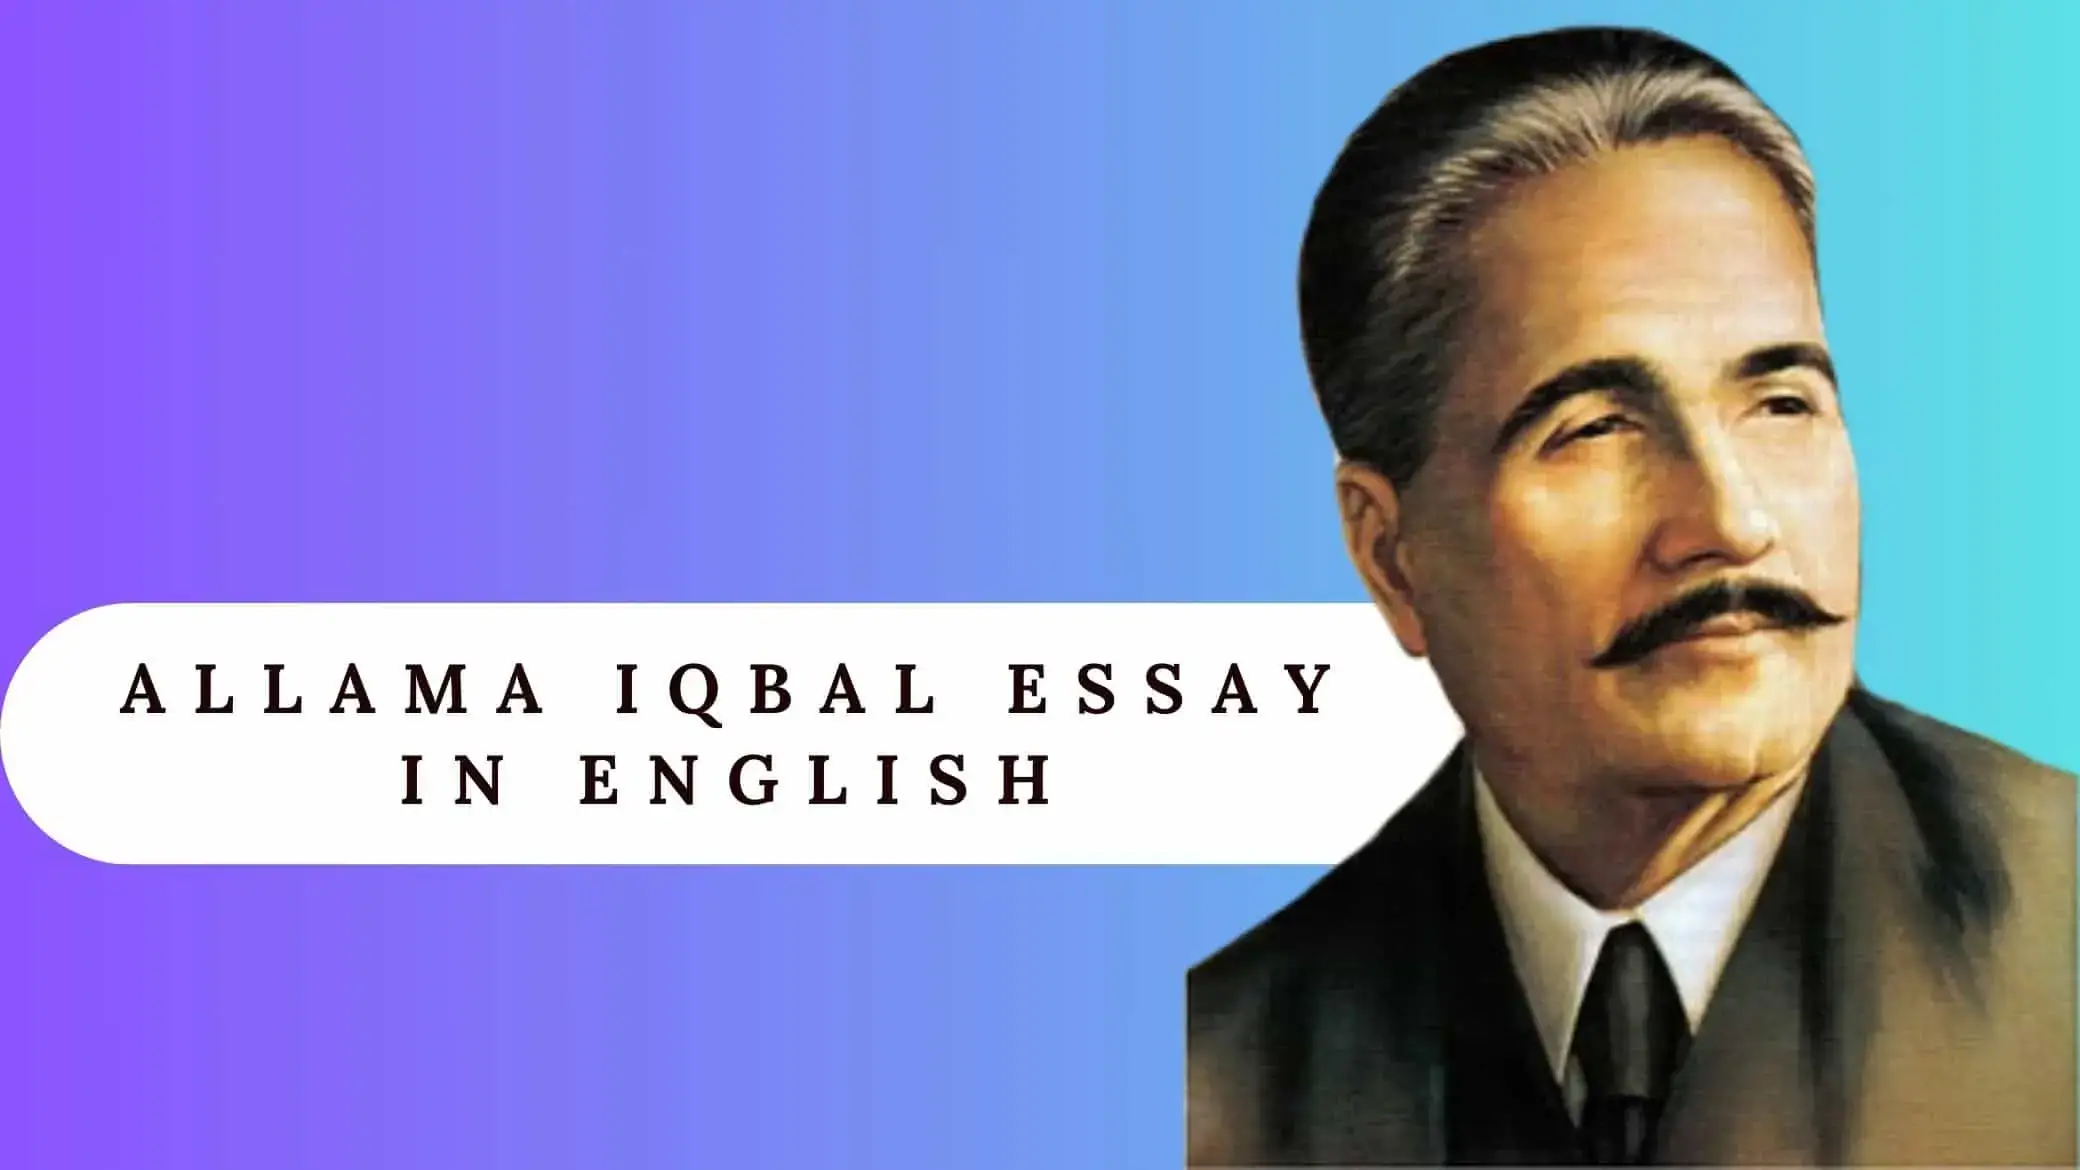 Allama Iqbal Essay in English